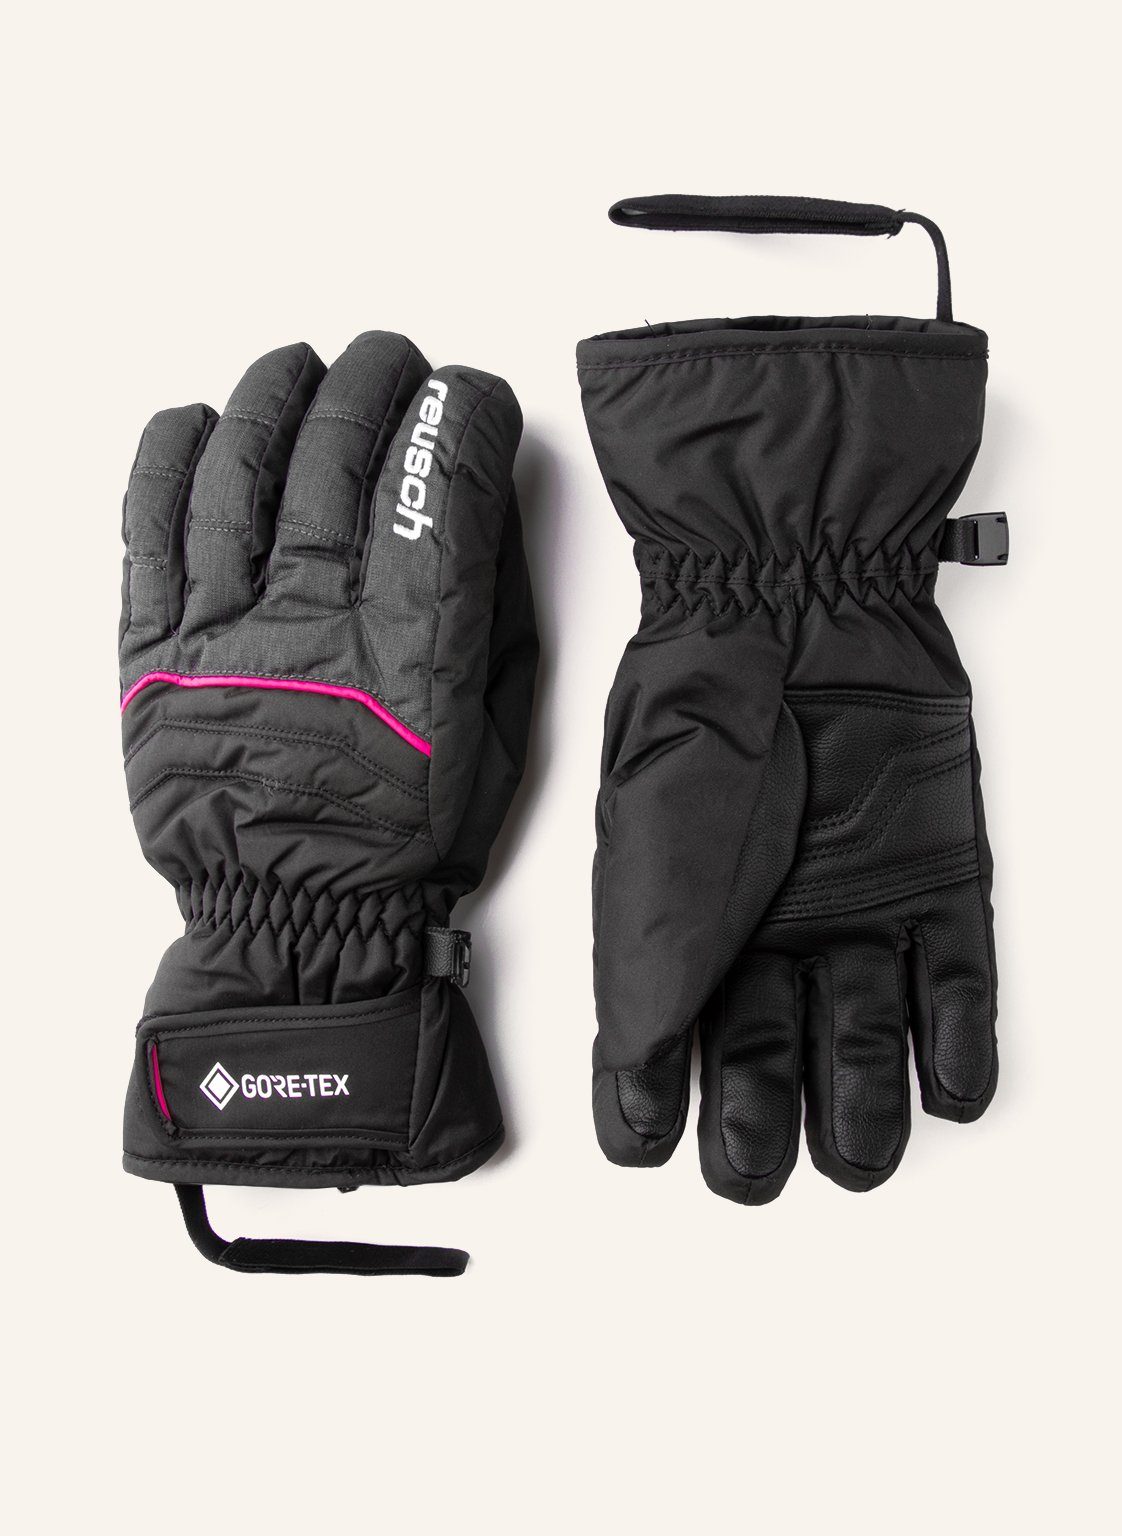 Reusch Skihandschuhe mit dunkelgrau-pink wasserdichter Funktionsmembran GORE-TEX Teddy